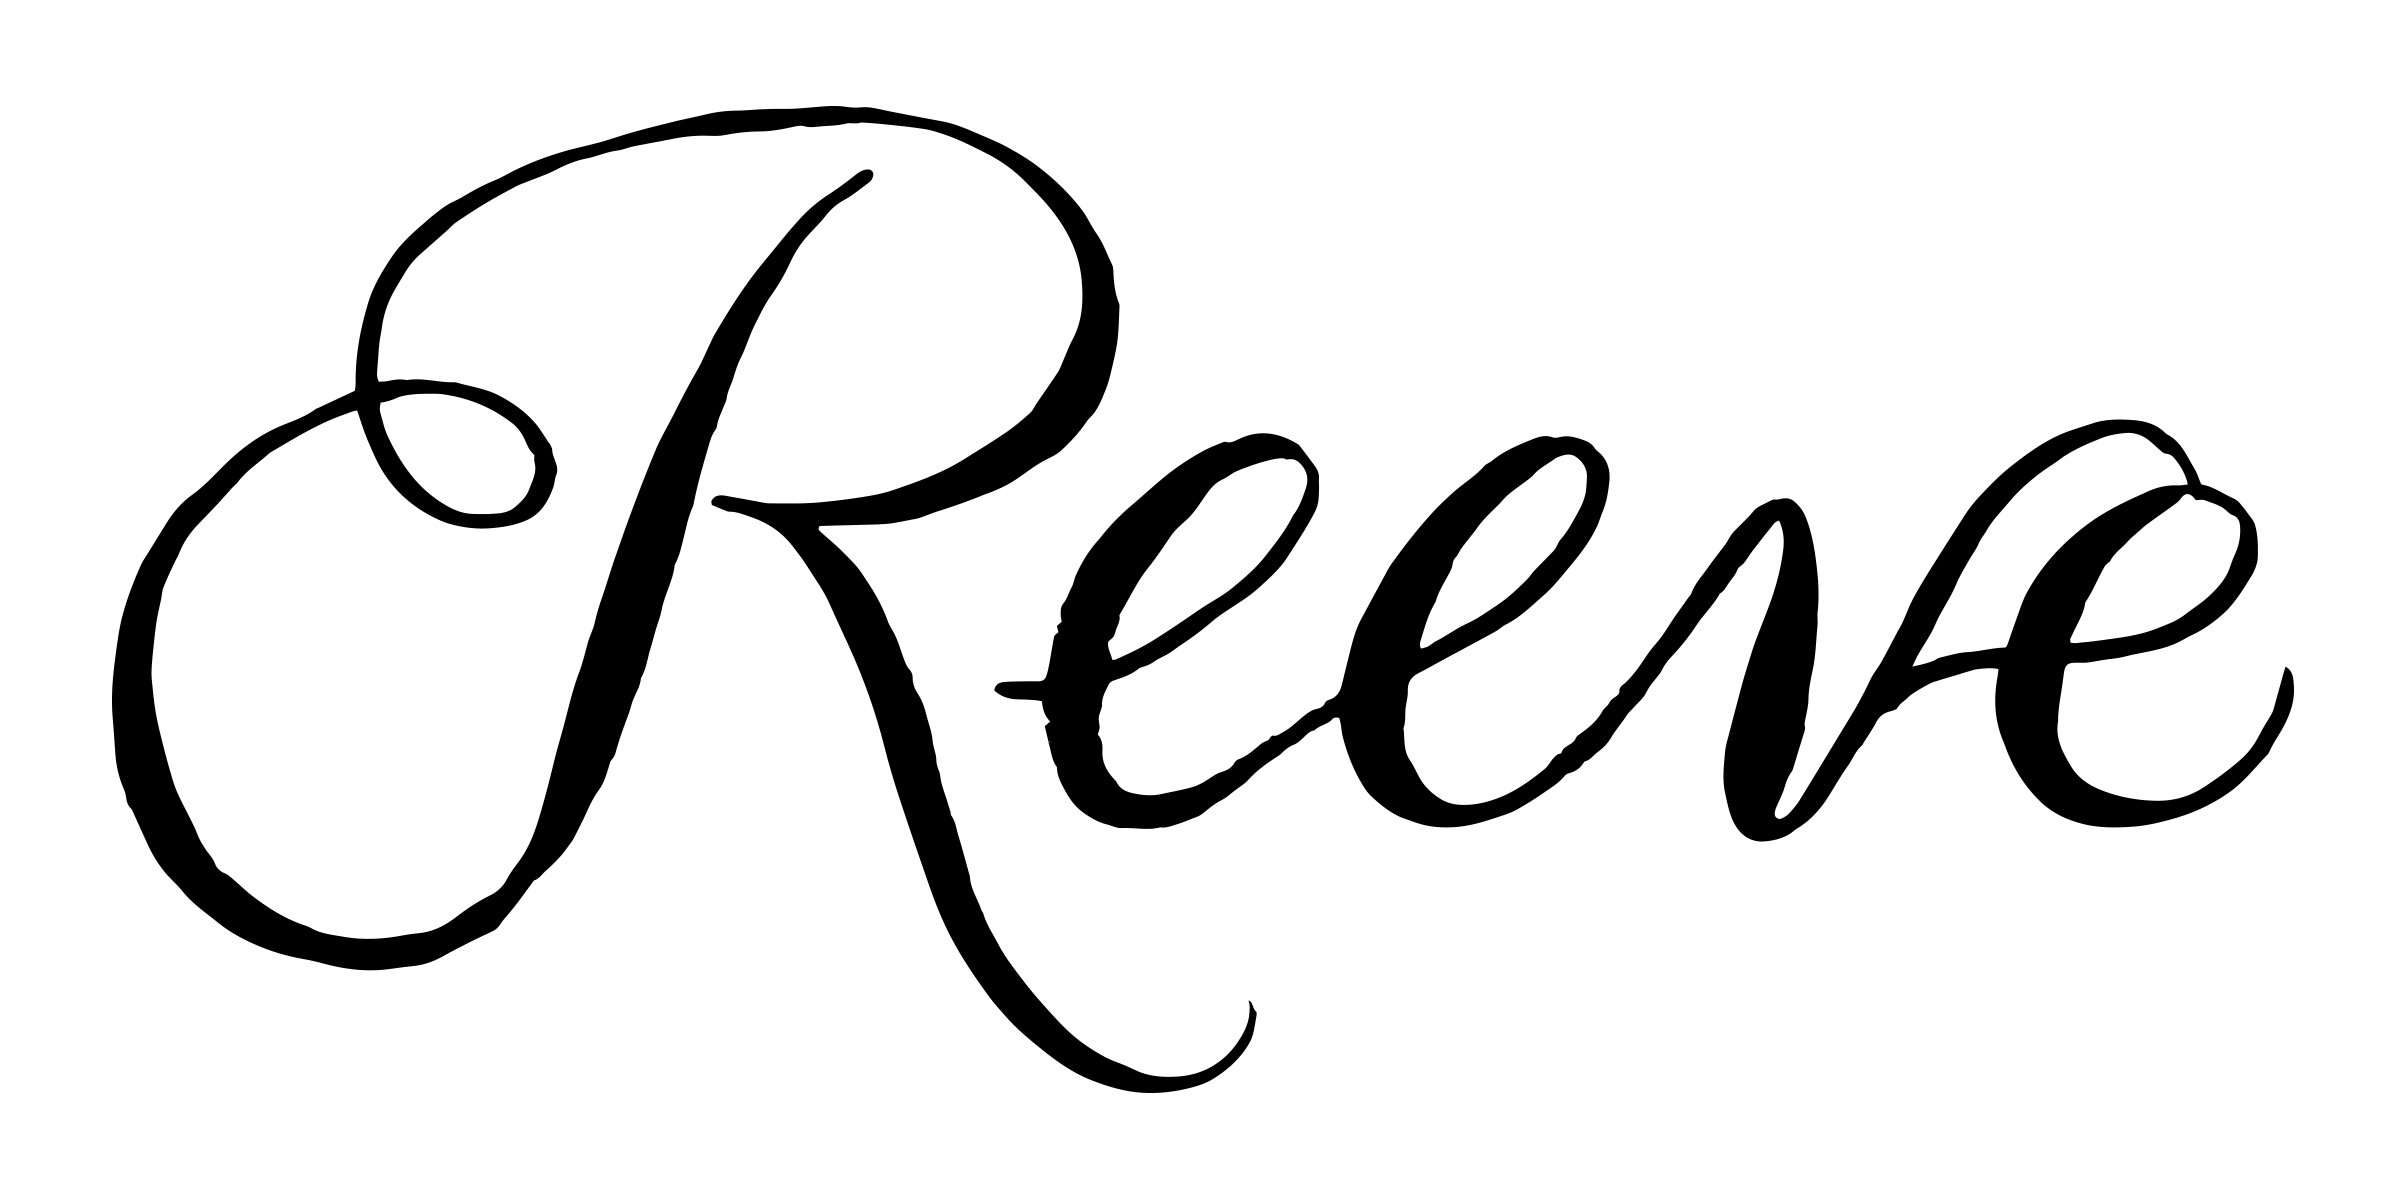 Reeve logo.jpg